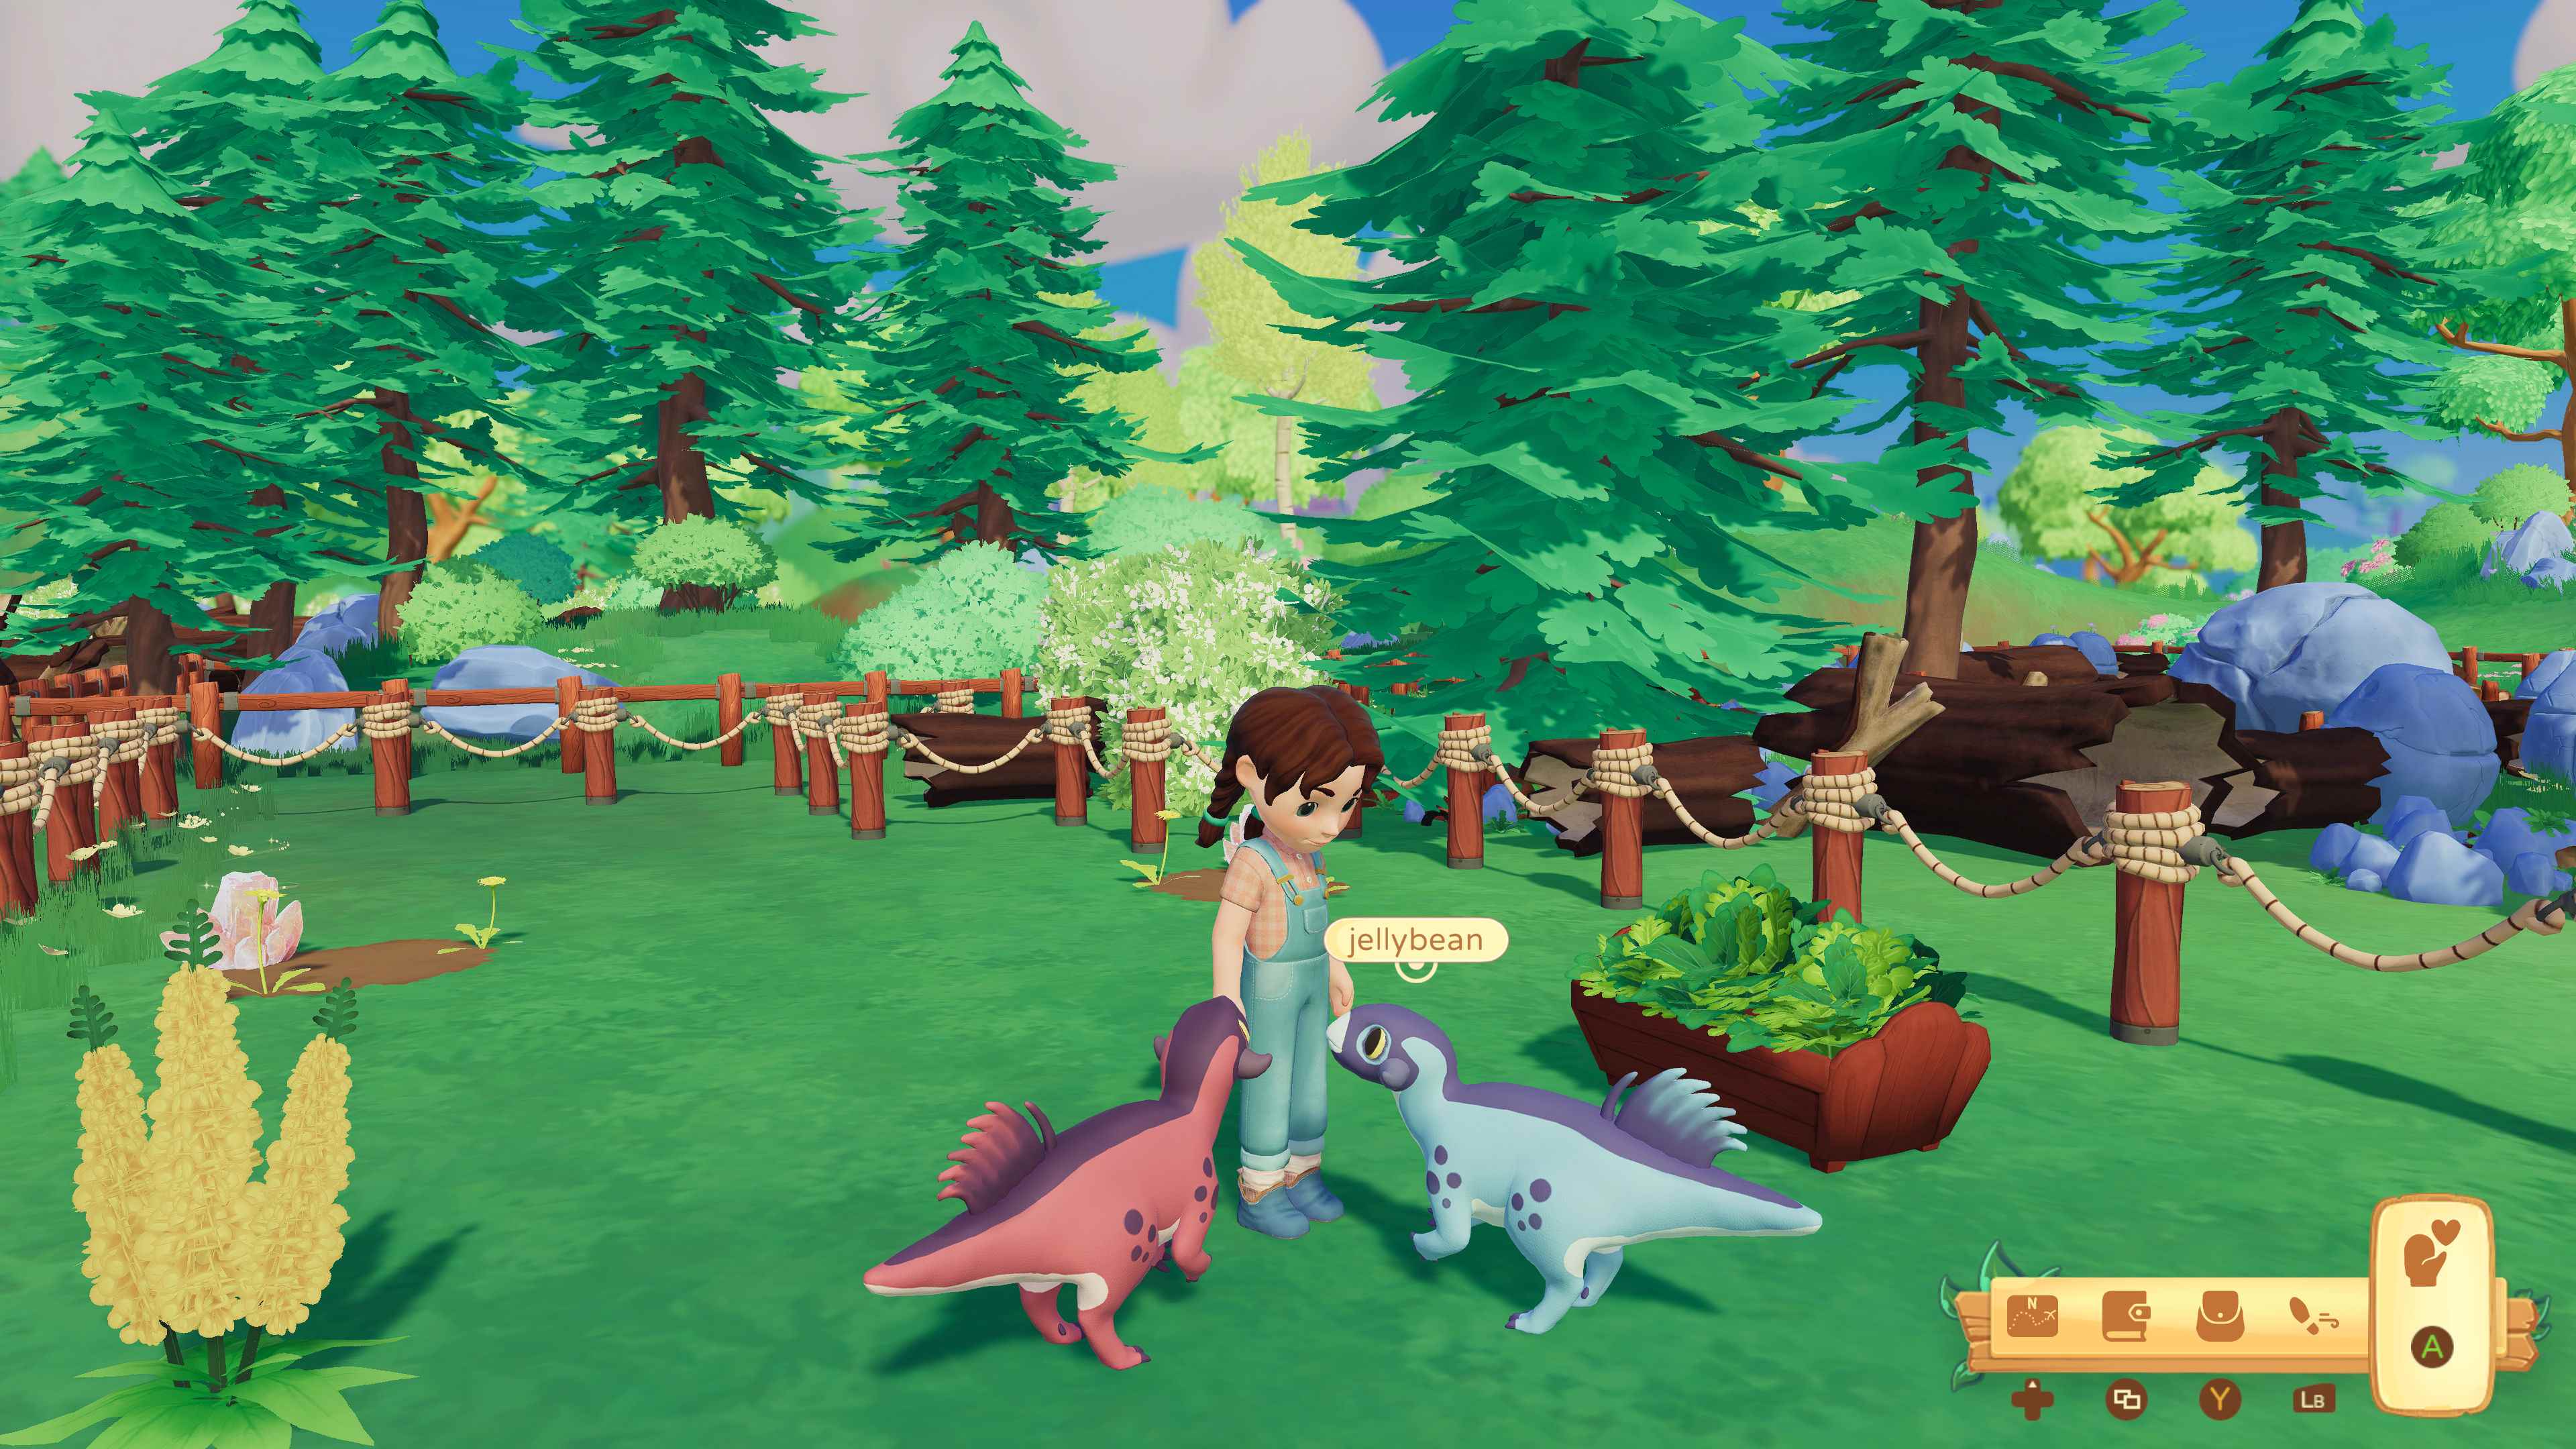 Paleo Pines ekran görüntüsü: Örgülü, biri Jellybean olan iki psittacosaurus ile etkileşime giren oyuncu yapımı bir karakter.